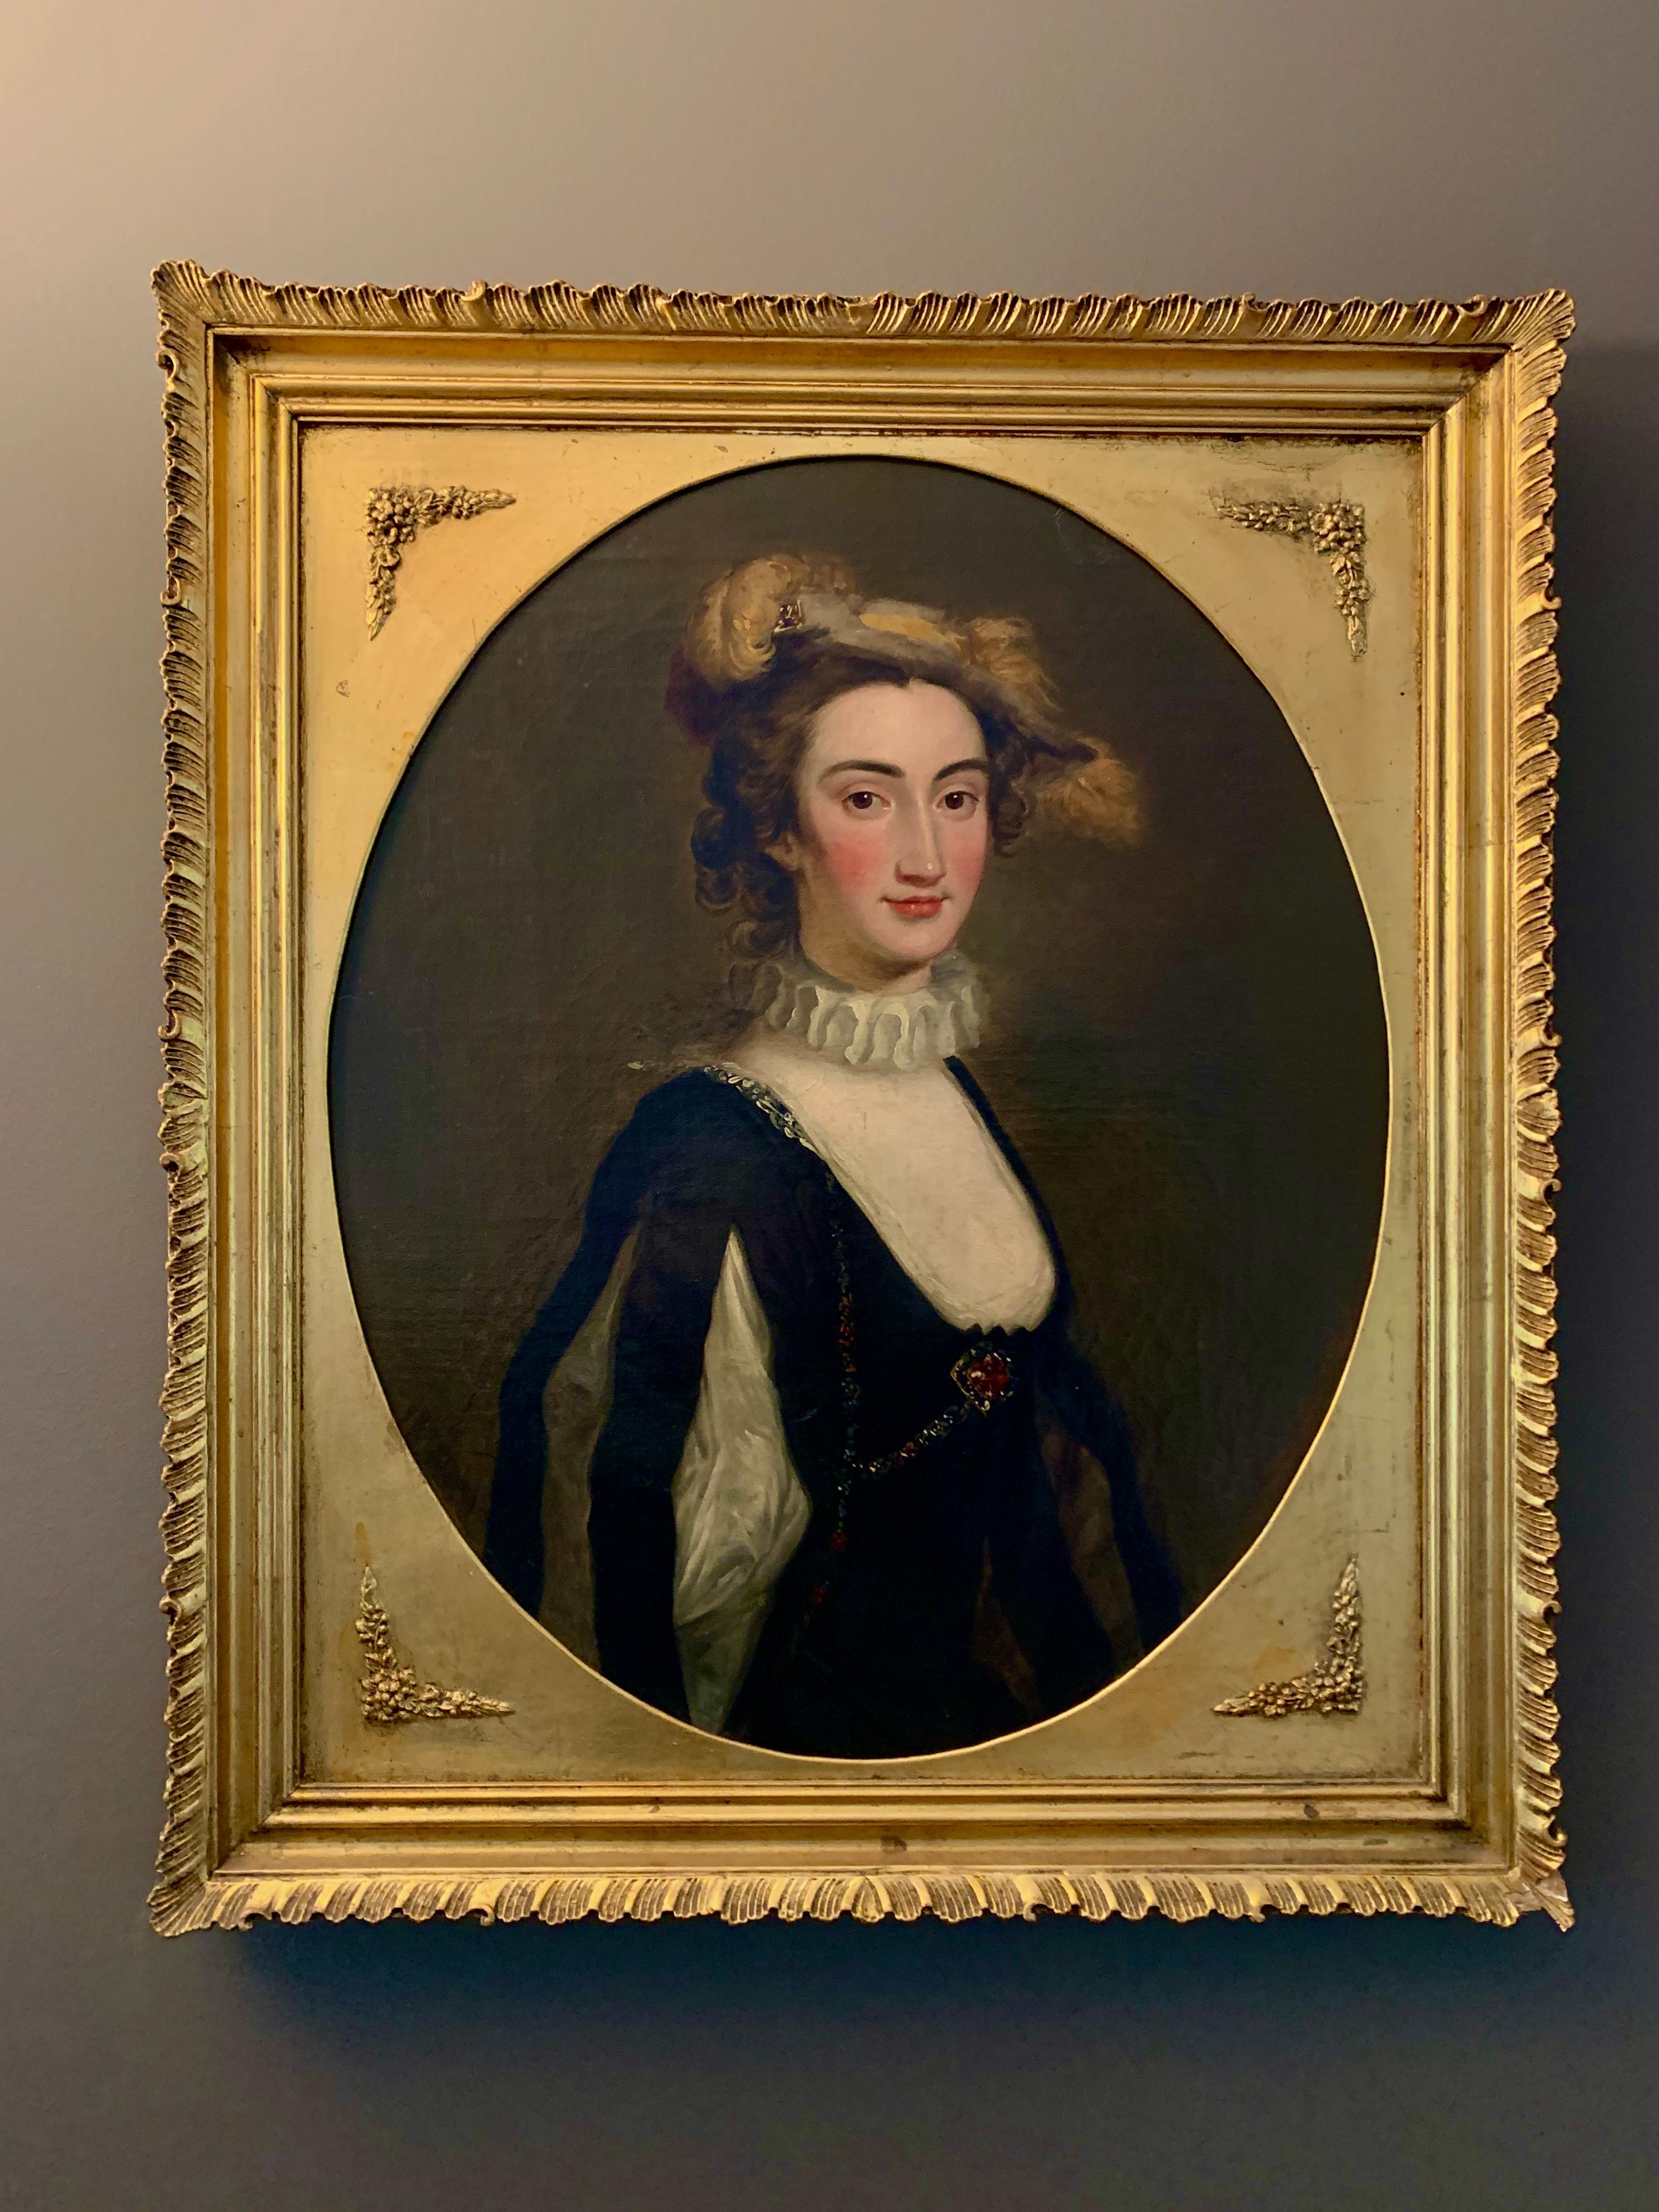 Portrait of Lady Elizabeth Pole - 18th century British Portrait Painting 13